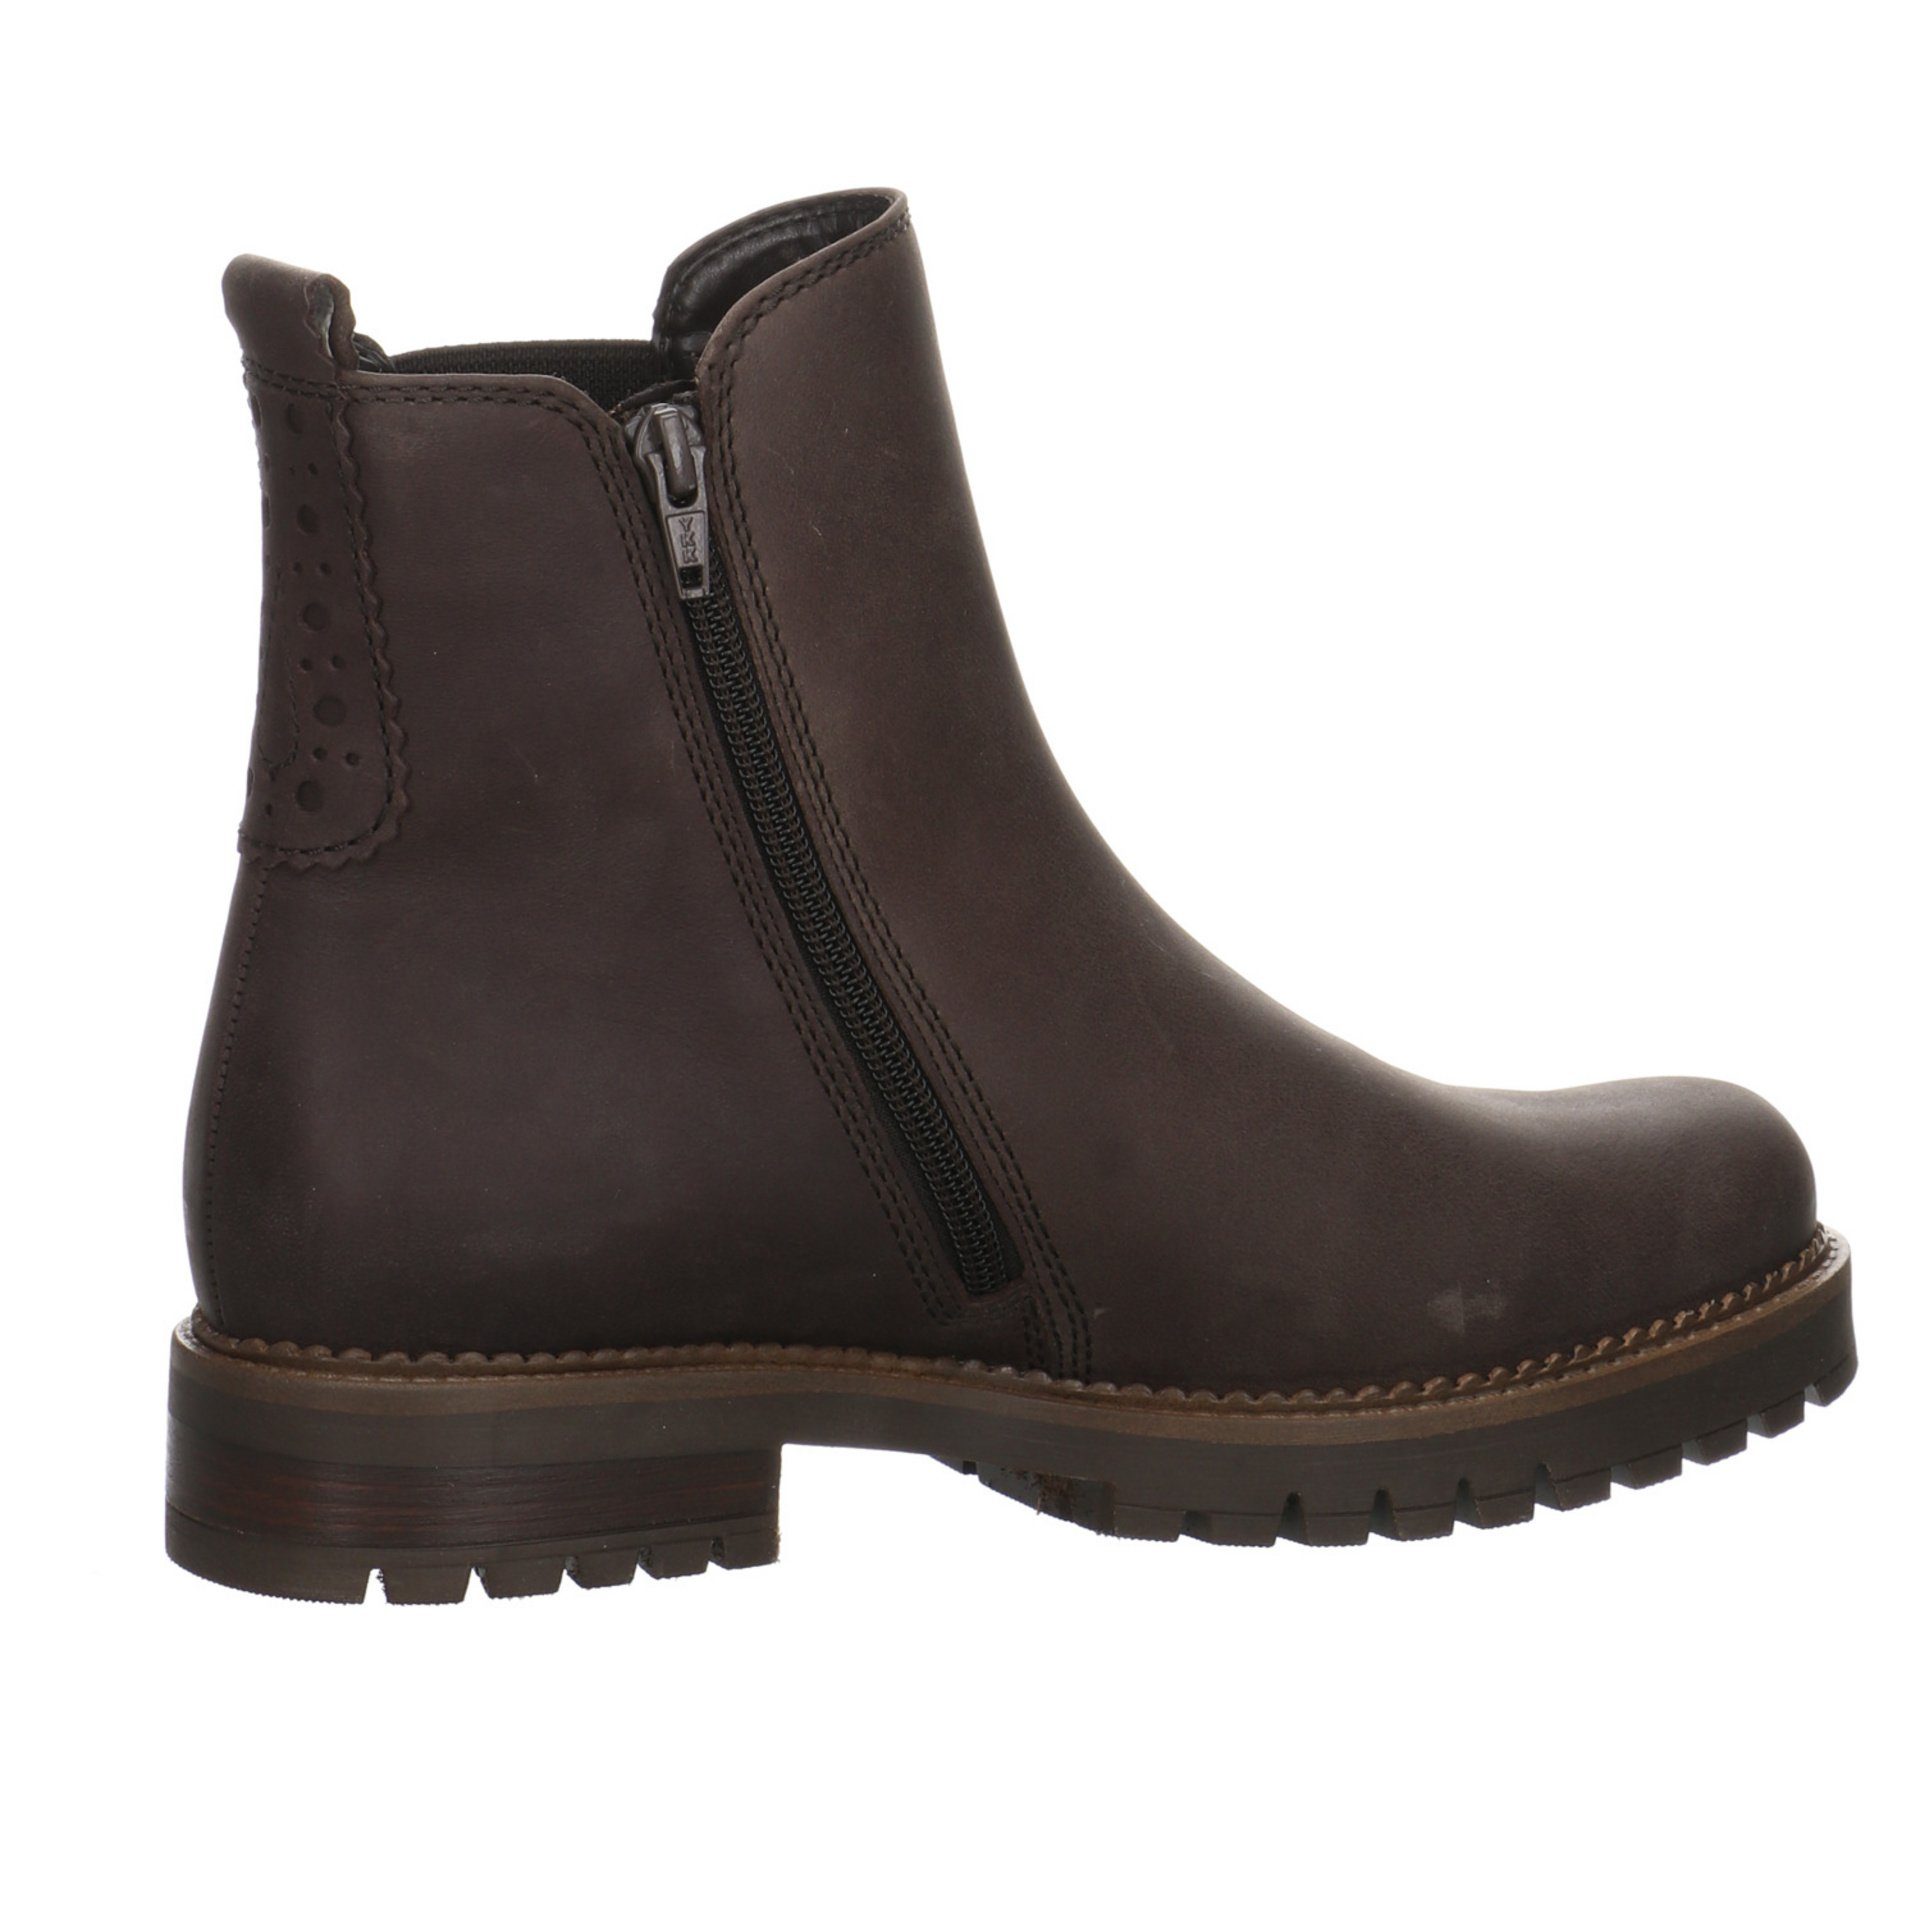 Gabor Damen Stiefel Schuhe Leder-/Textilkombination Braun Chelsea-Boots (espresso) Stiefel